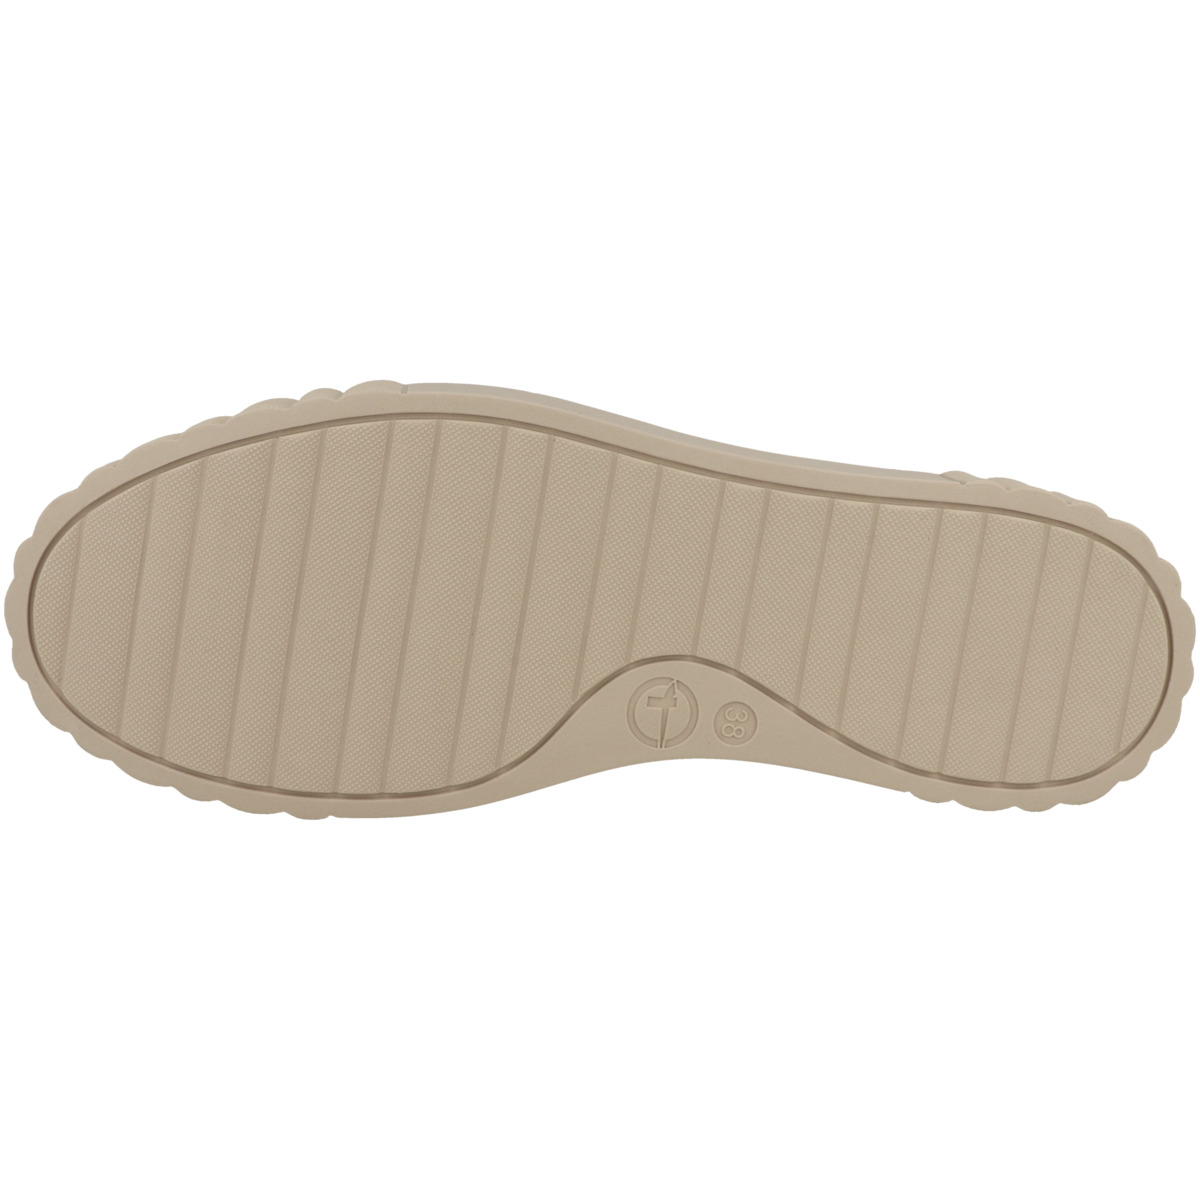 Tamaris 1-23738-41 Sneaker low beige